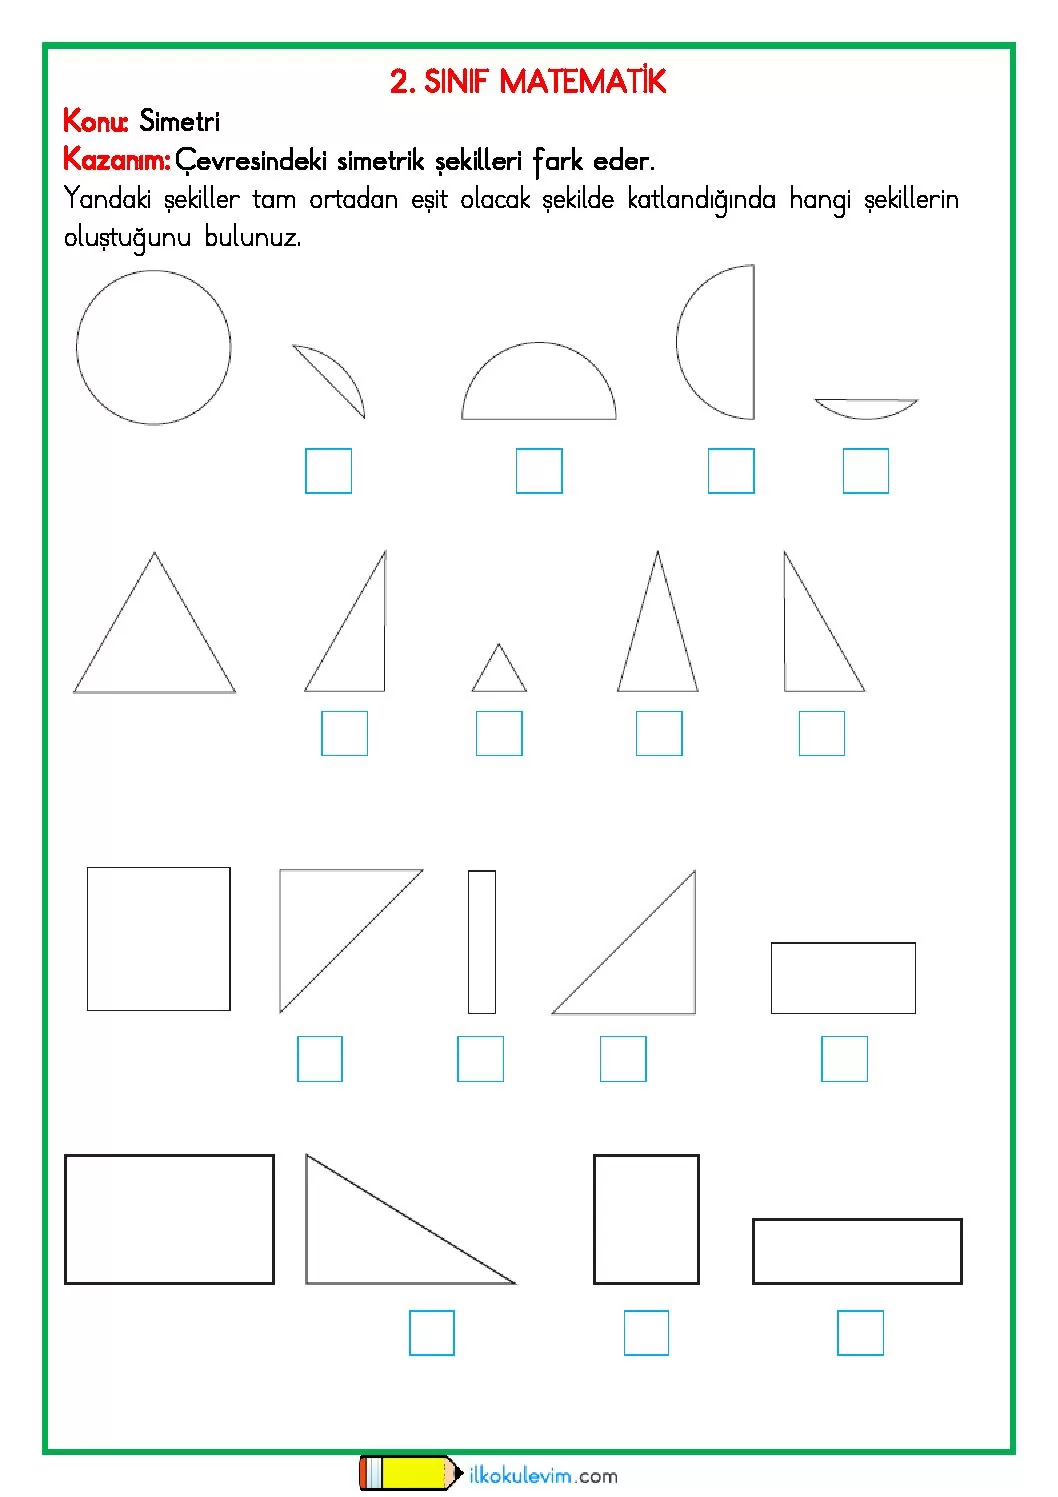 2 sinif matematik simetri etkinligi 1 pdf